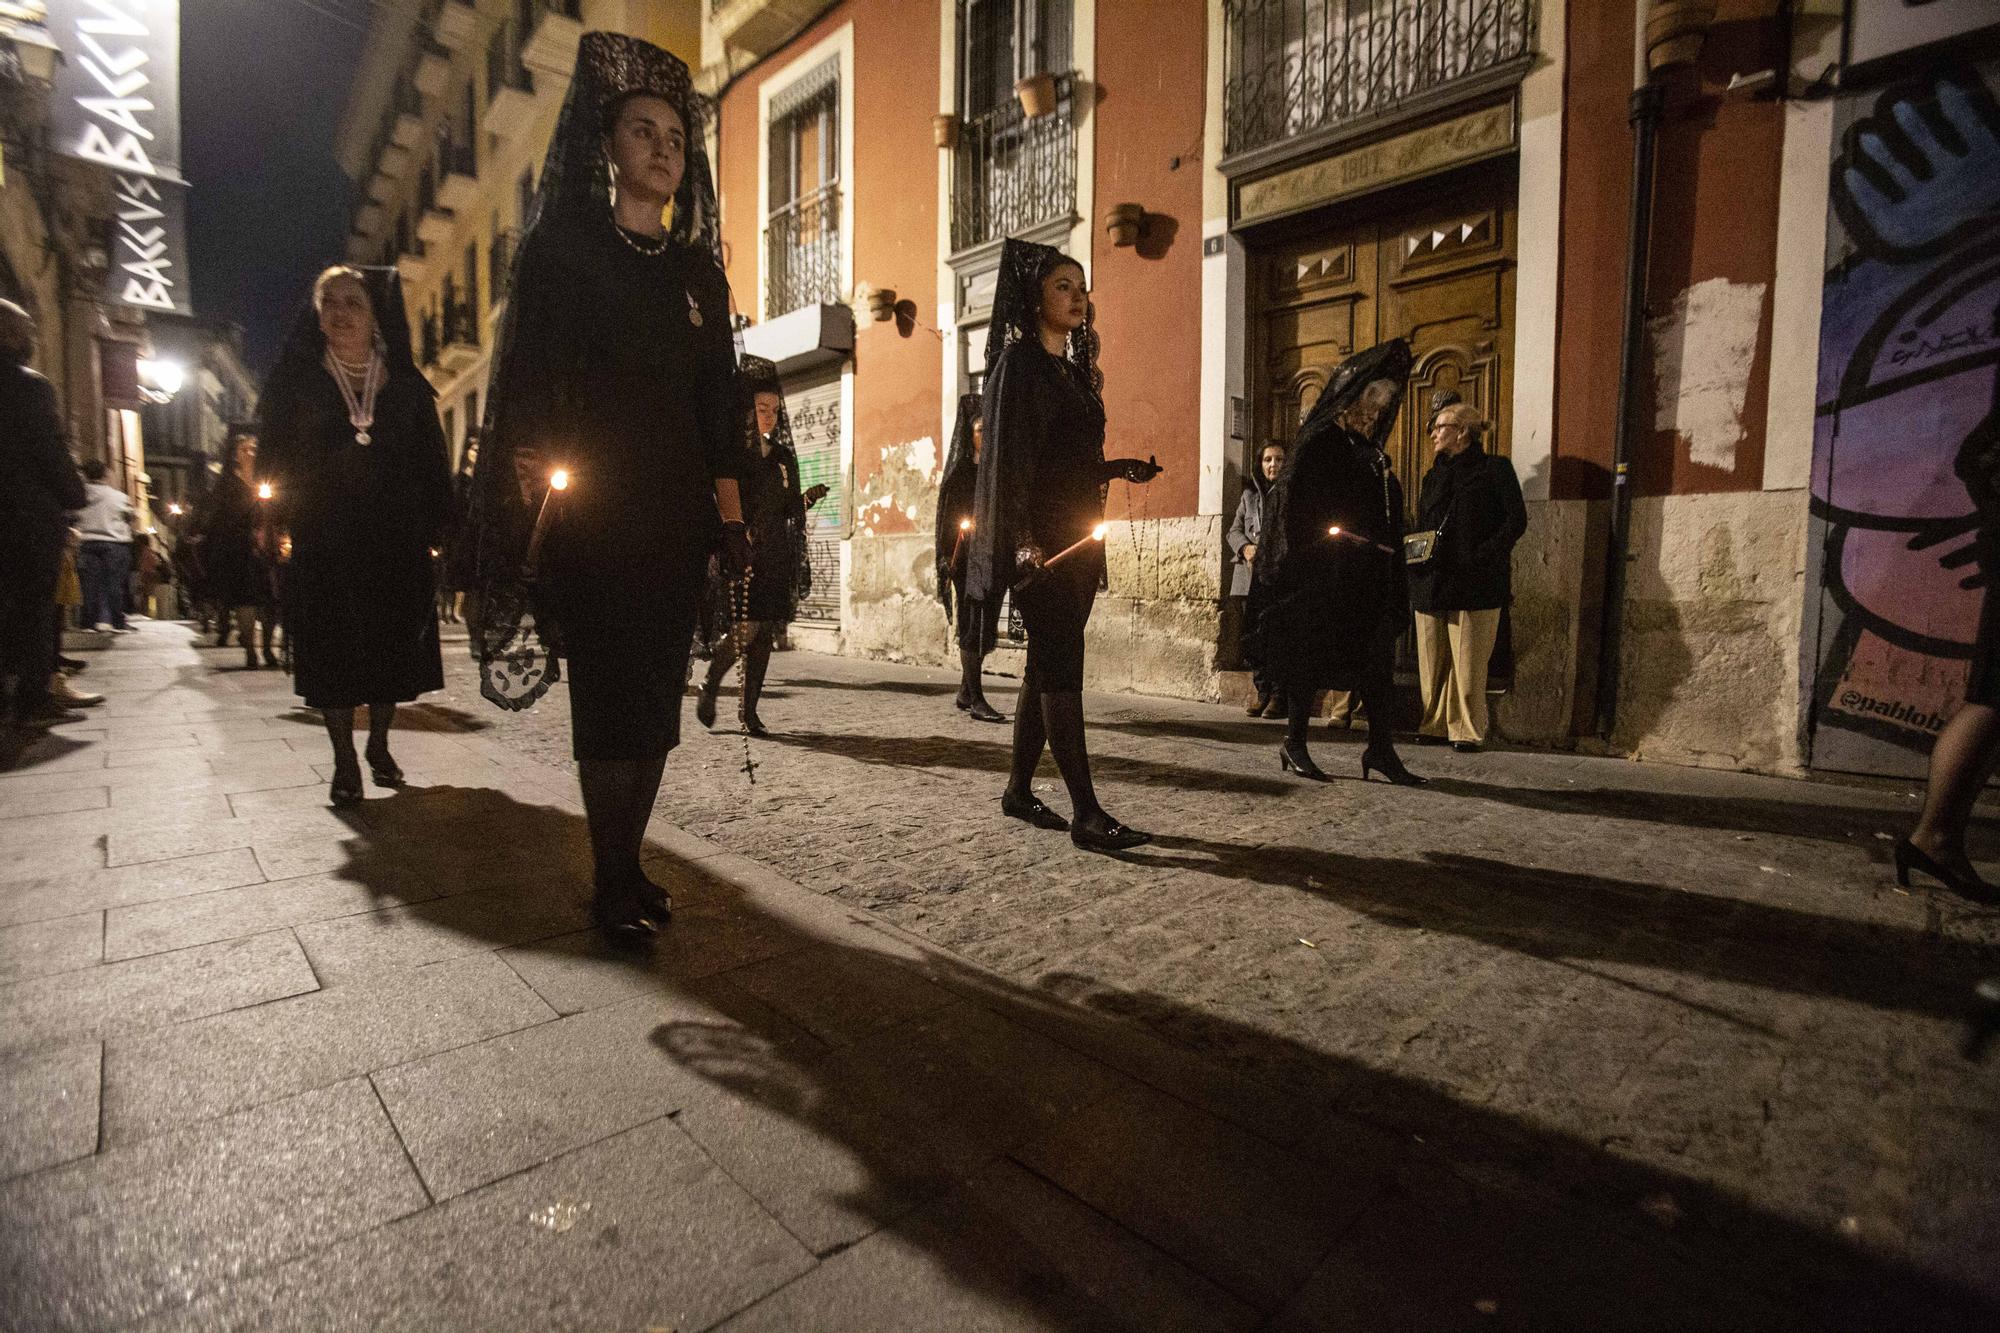 Procesión nocturna del Divino Amor "La Marinera" por las calles del barrio de Alicante